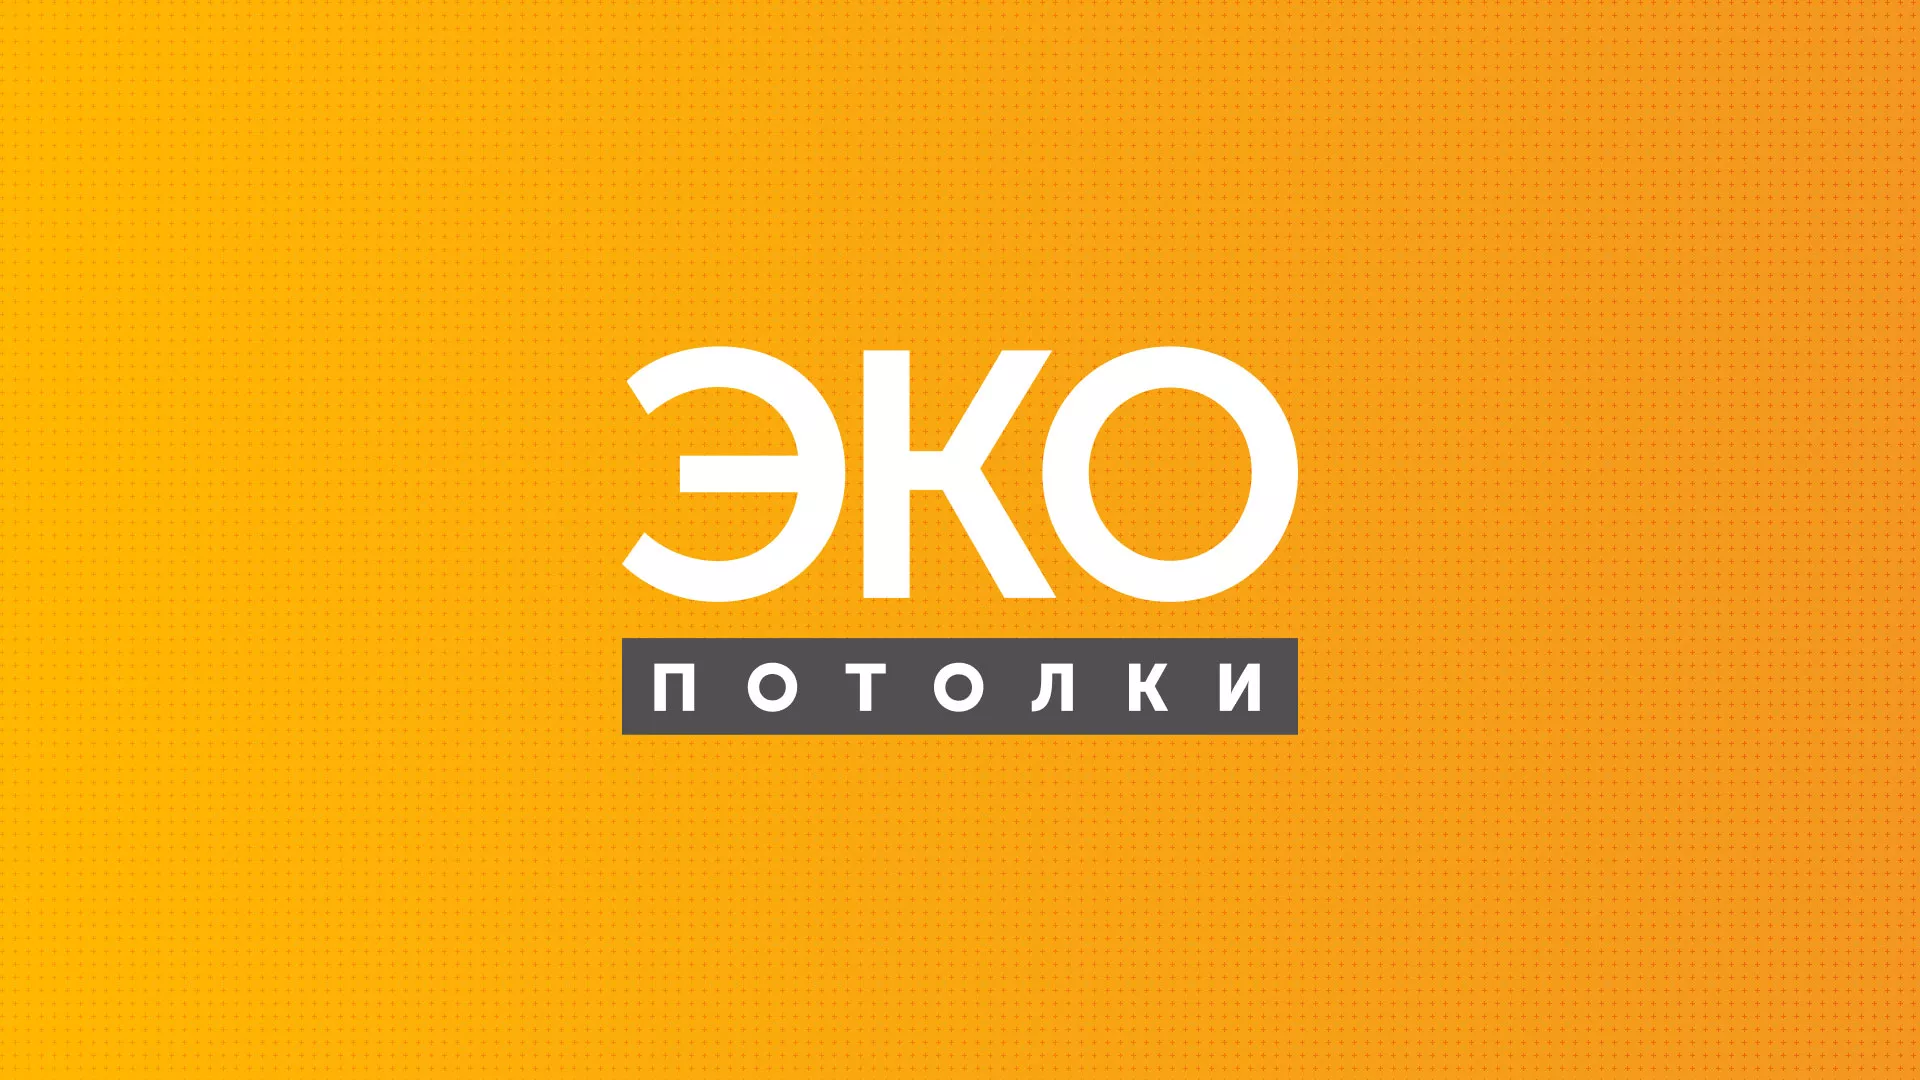 Разработка сайта по натяжным потолкам «Эко Потолки» в Соль-Илецке